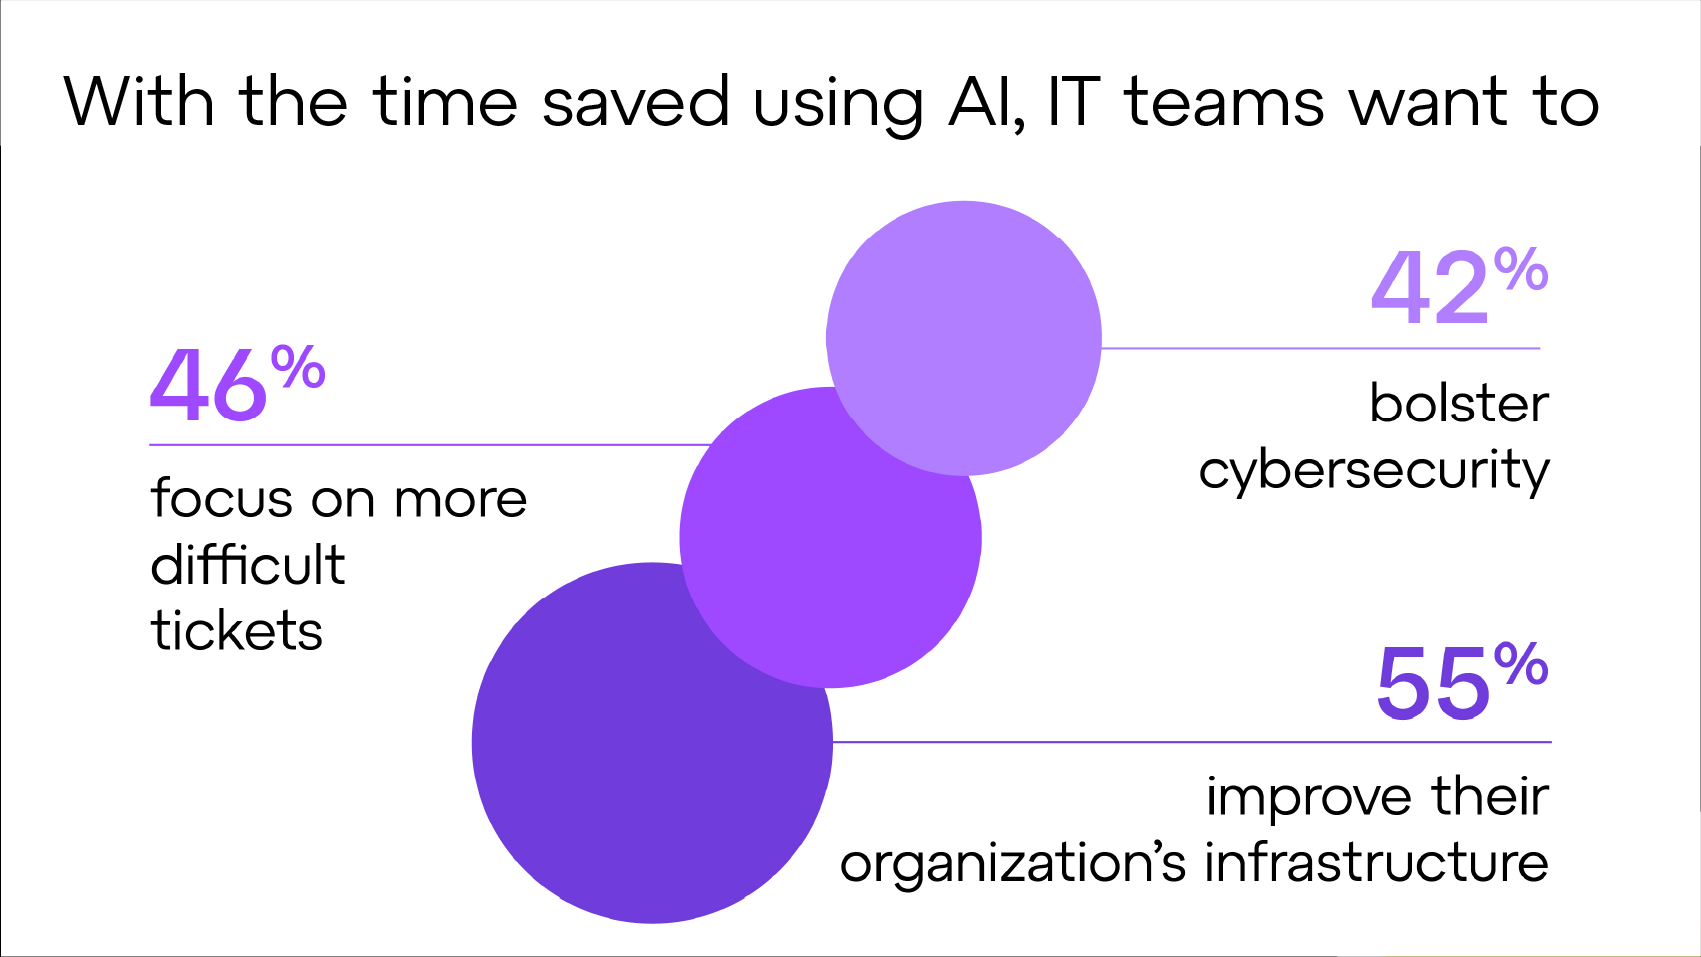 Dank der Zeitersparnis durch KI können sich IT-Teams auf komplexere Aufgaben konzentrieren, die Cybersicherheit optimieren und die Infrastruktur ihres Unternehmens verbessern.